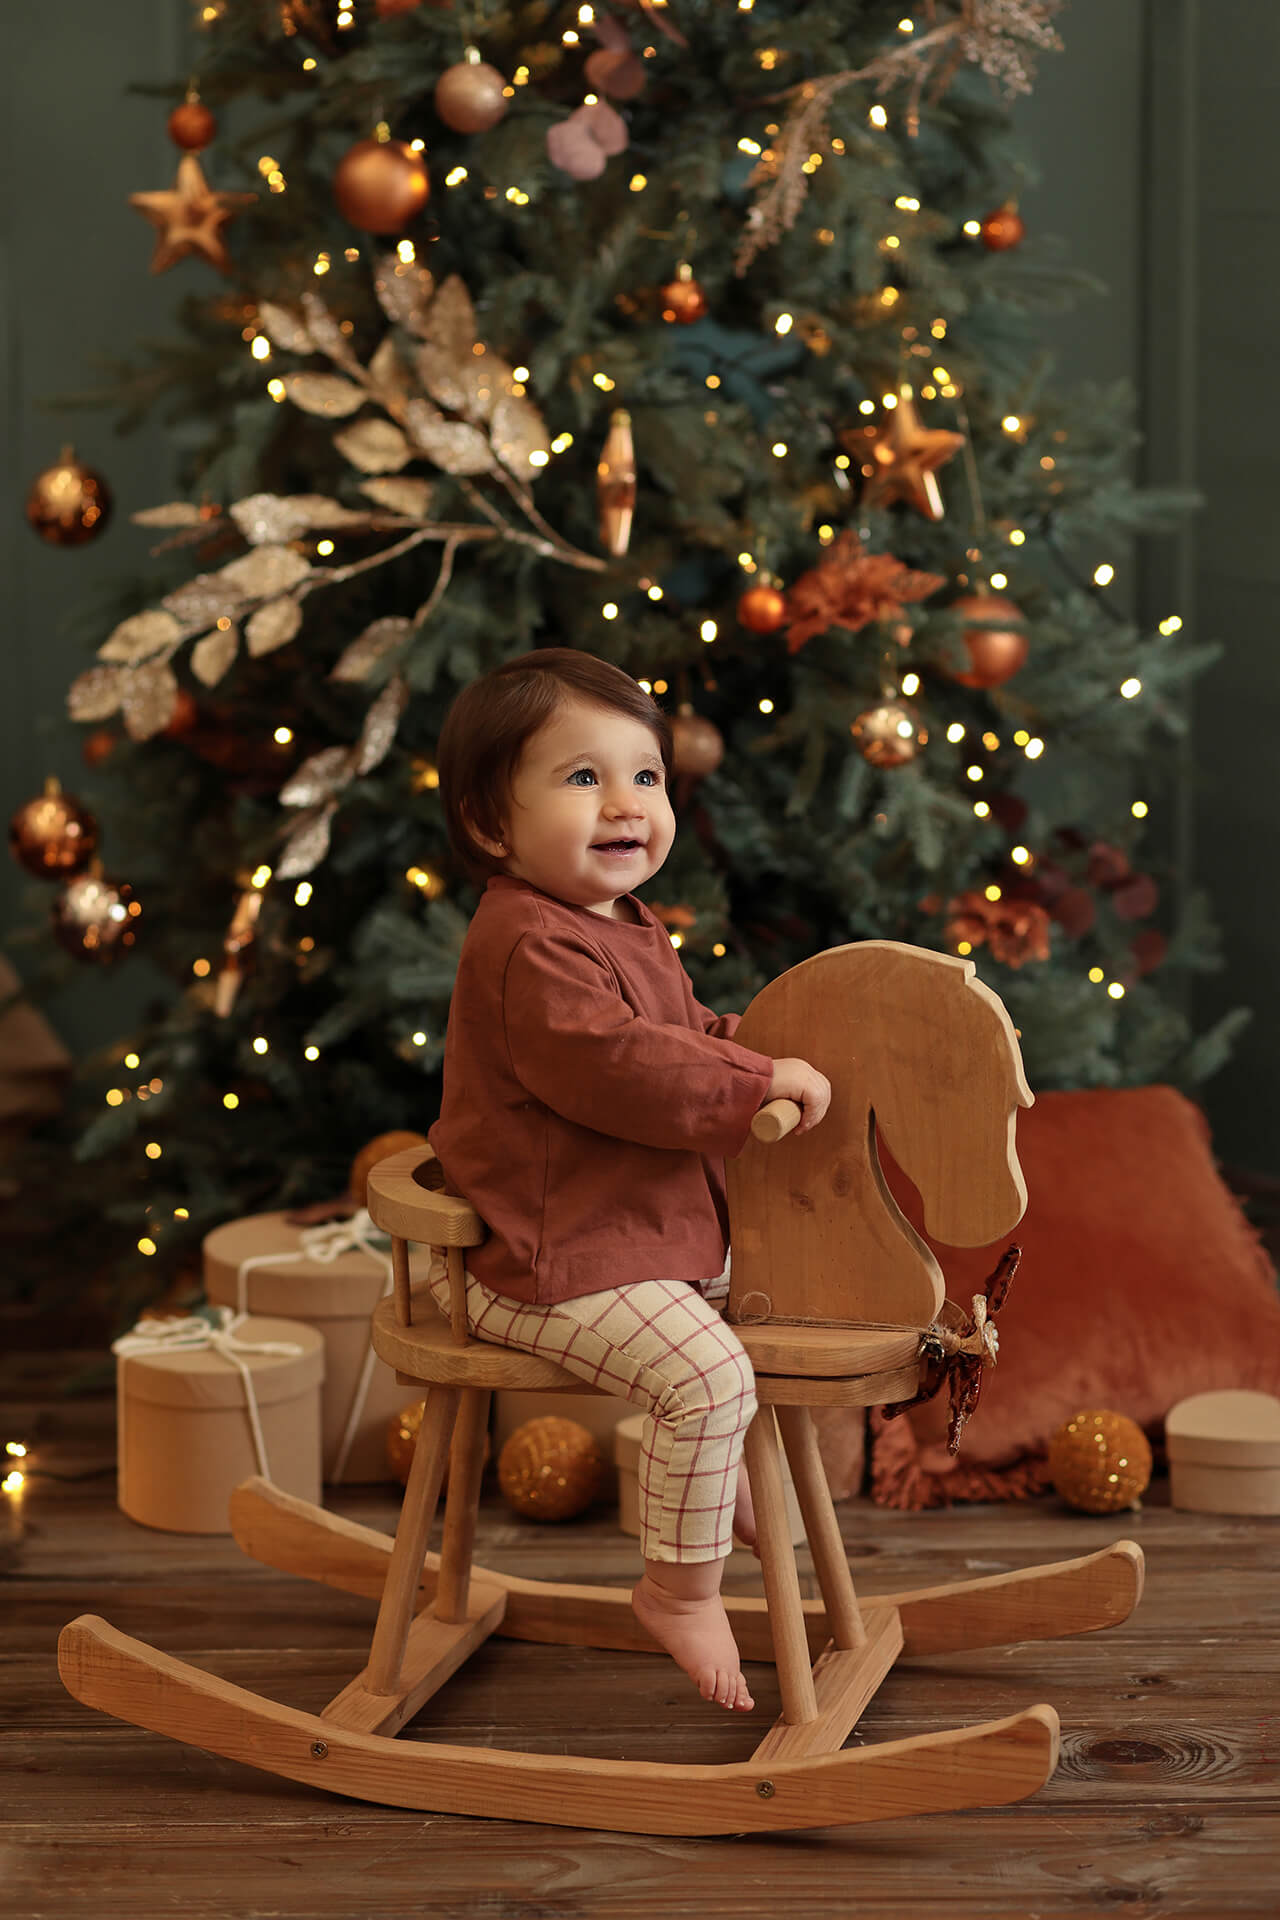 fotografía para bebés en Navidad